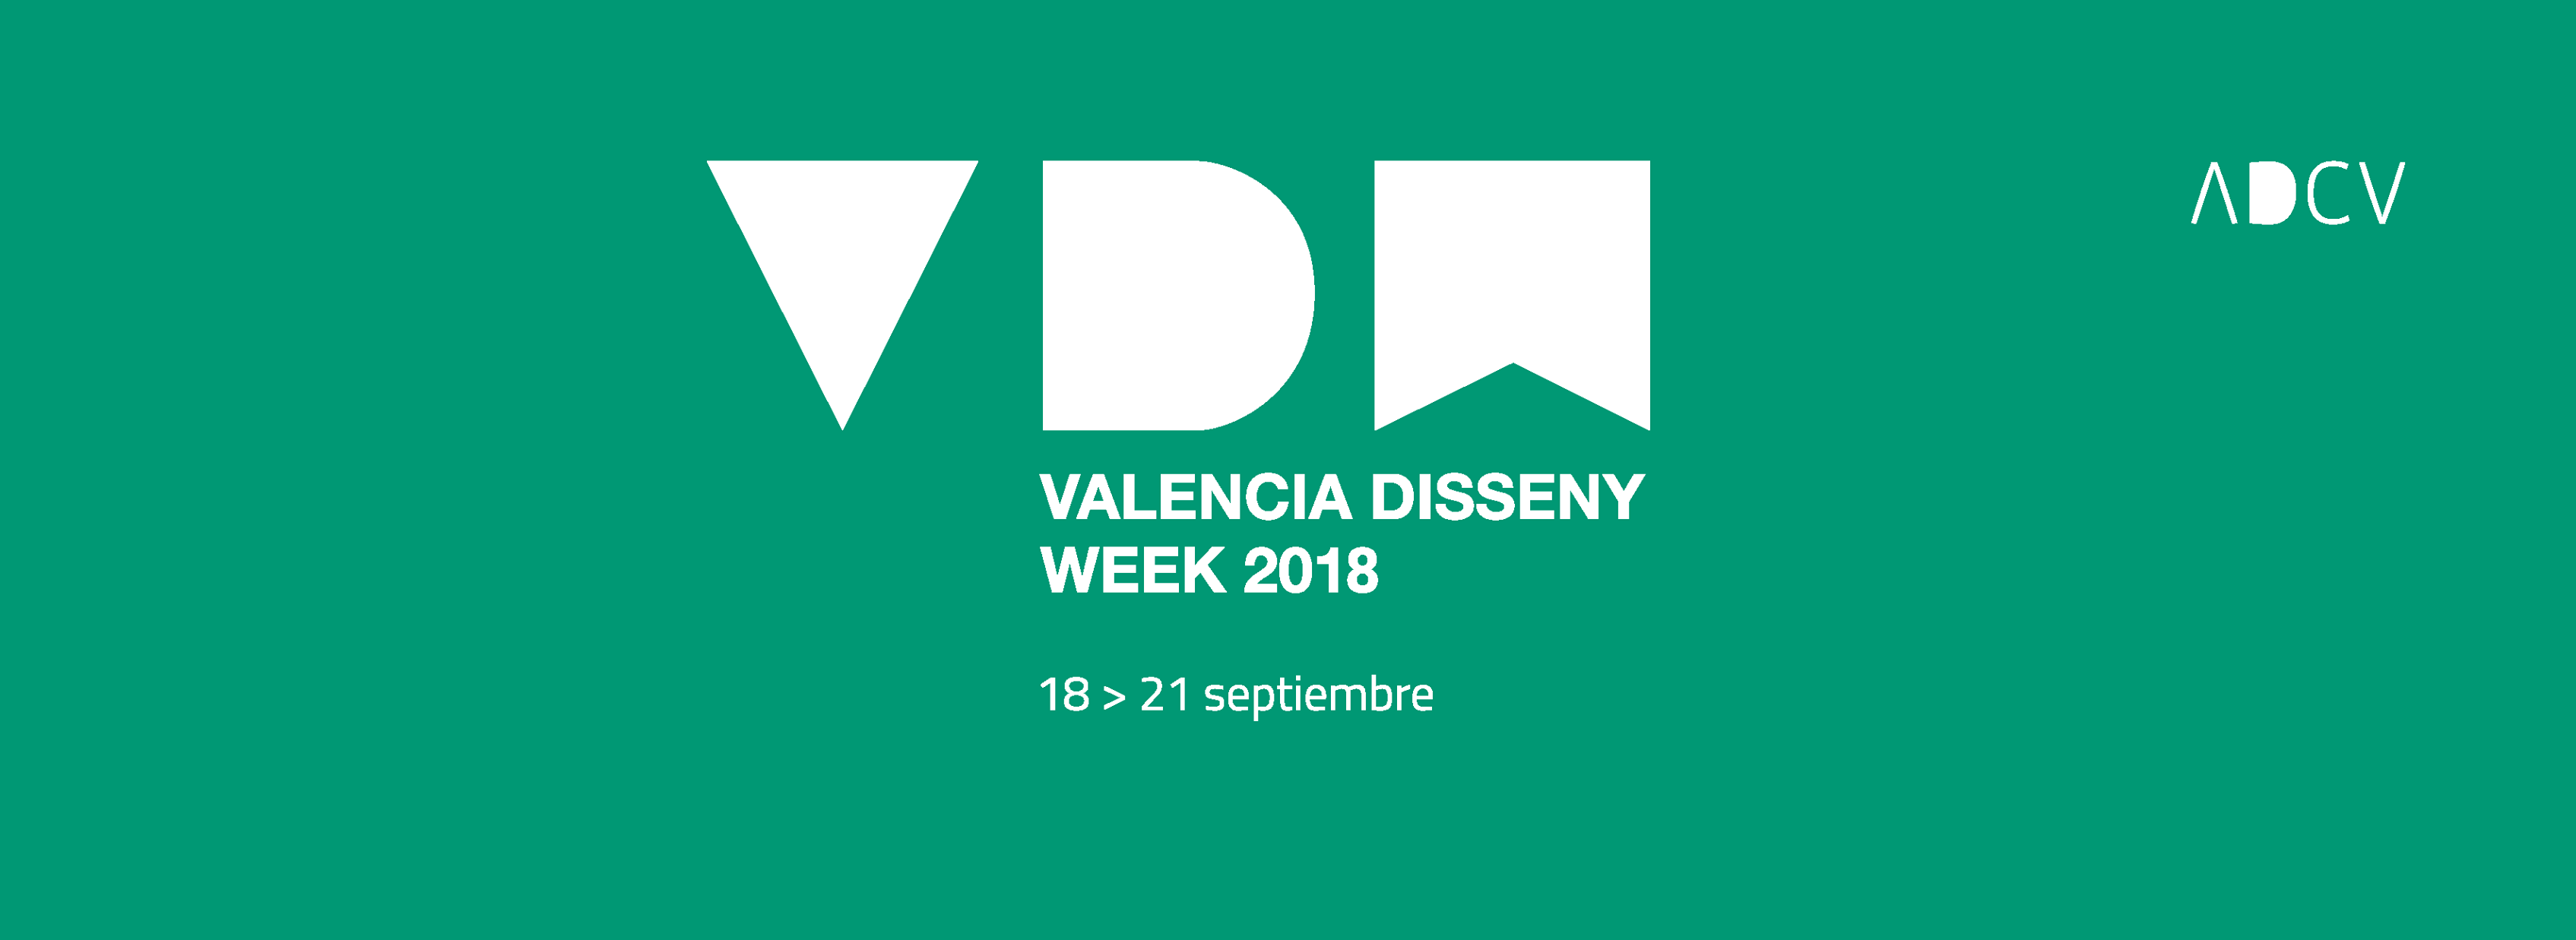 valencia disseny week 2018